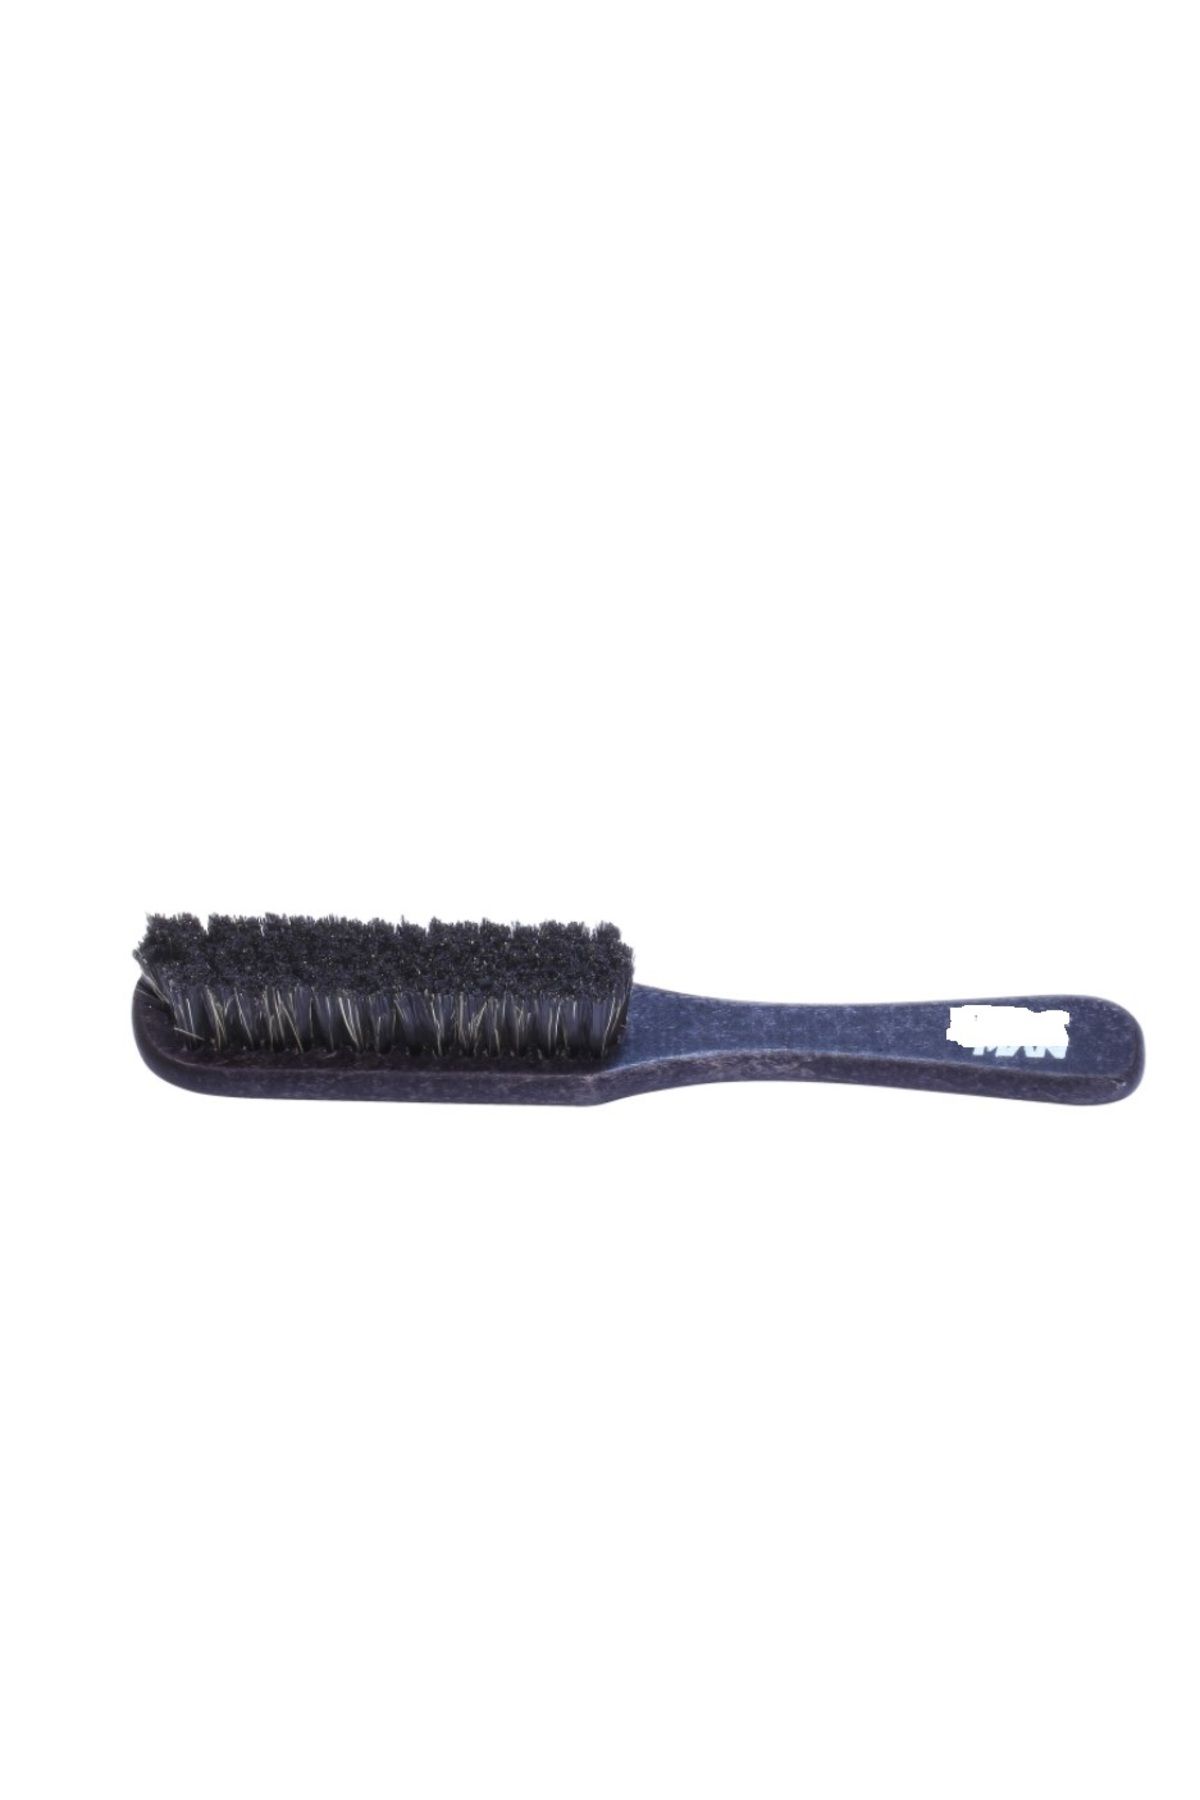 Nano Absolute fade fırça sıfırlama fırçası ense sakal temizleme fırçası sıfır kesim fırçası L